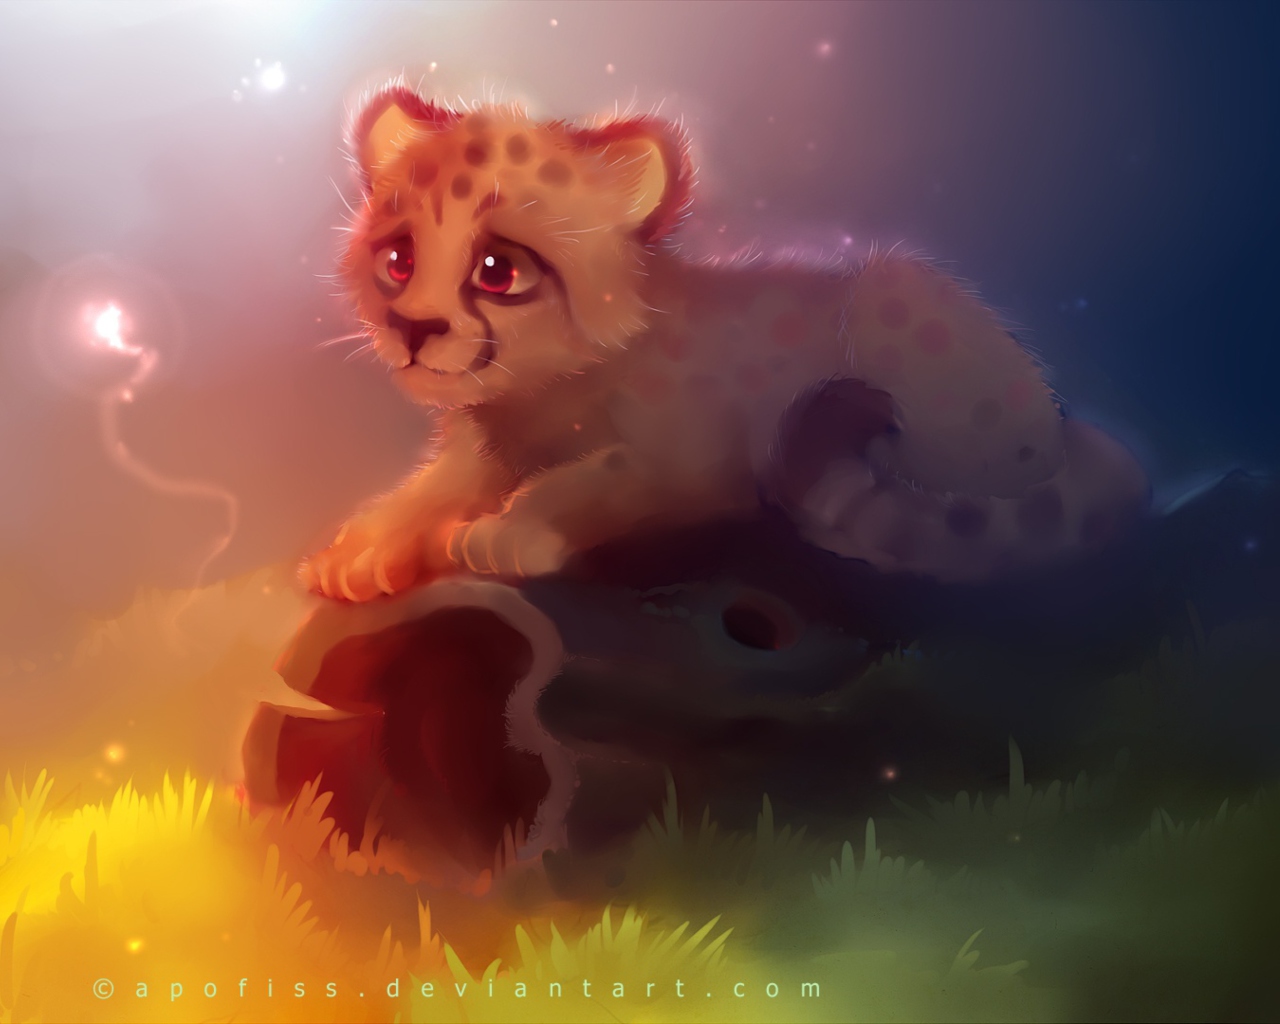 Das Cute Cheetah Painting Wallpaper 1280x1024